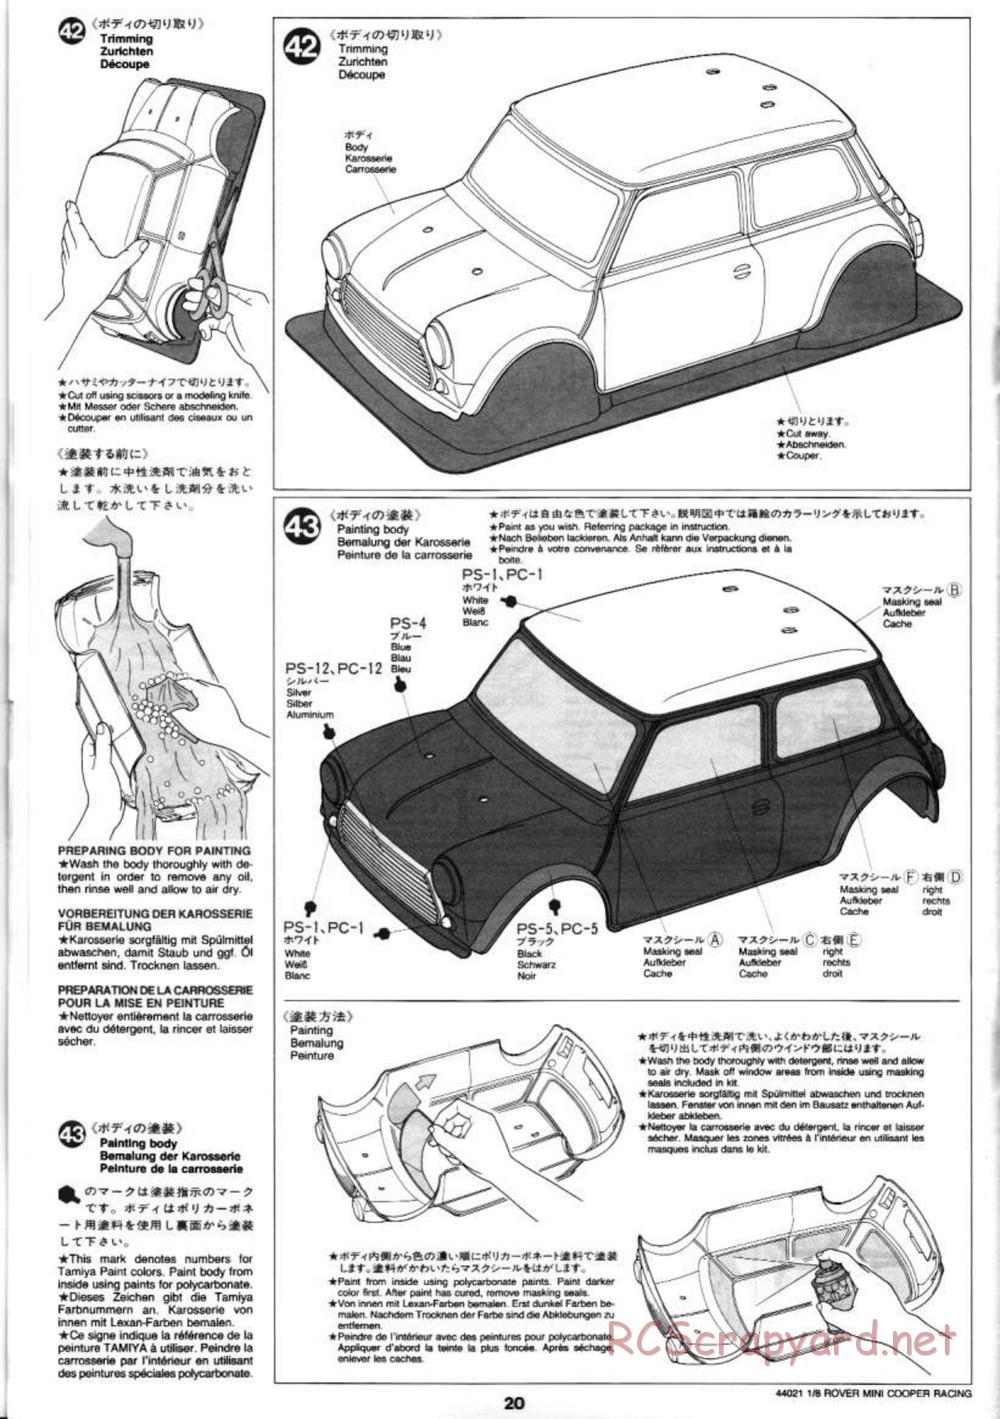 Tamiya - Rover Mini Cooper Racing - TG10 Mk.1 Chassis - Manual - Page 20